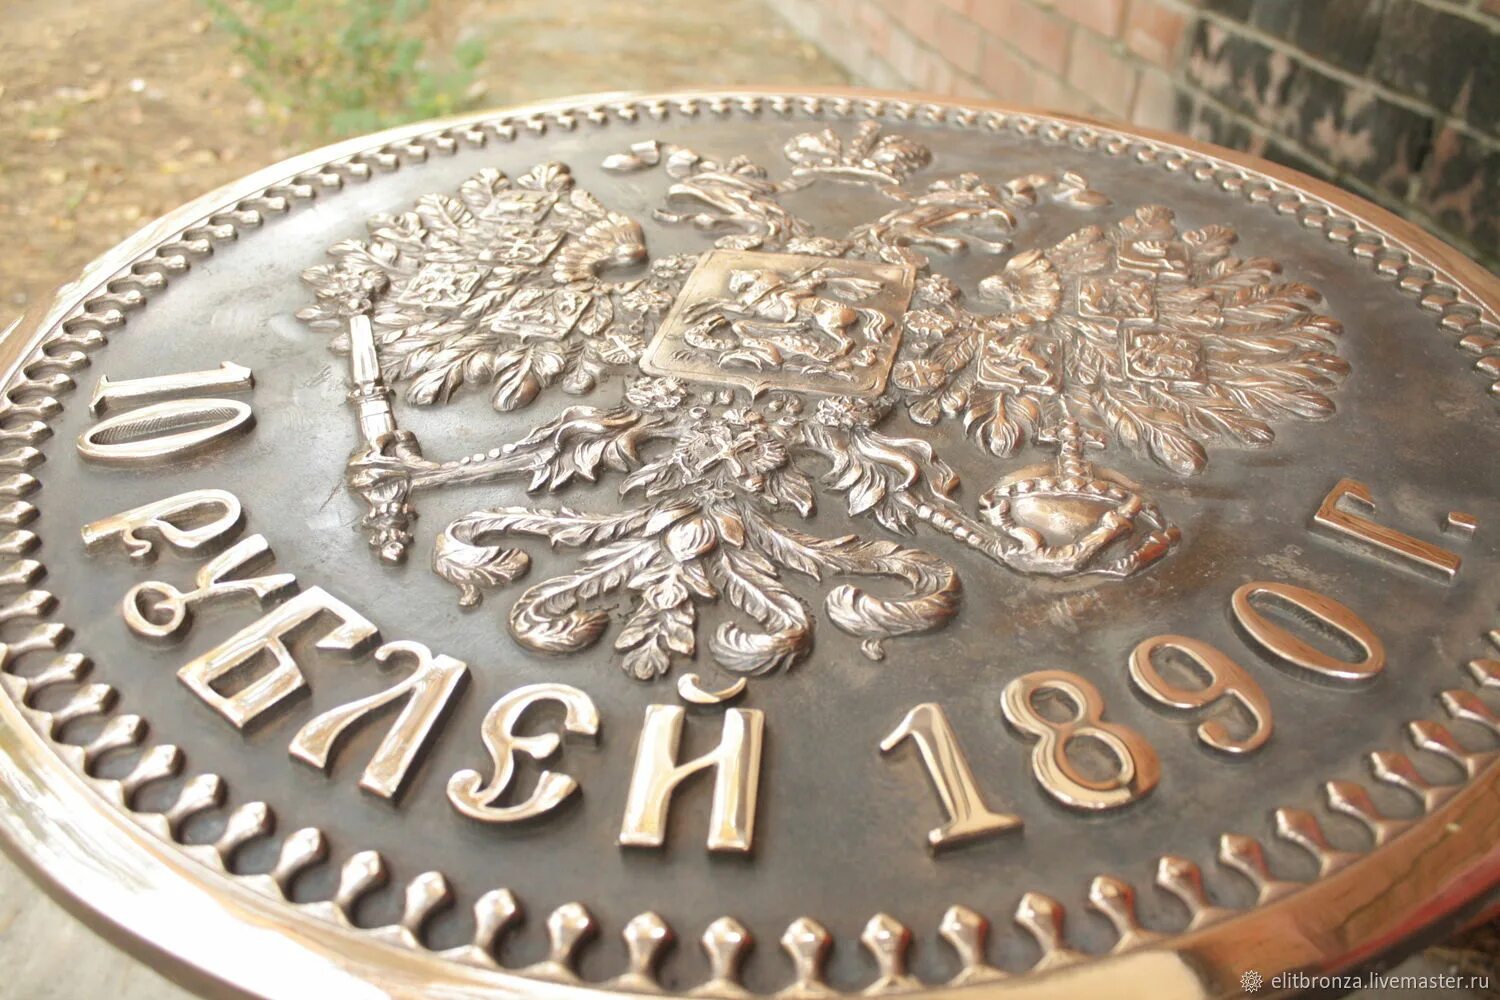 Красивая монета Российской империи. Красивая Монетка Российской империи. Купить за рубль в интернете